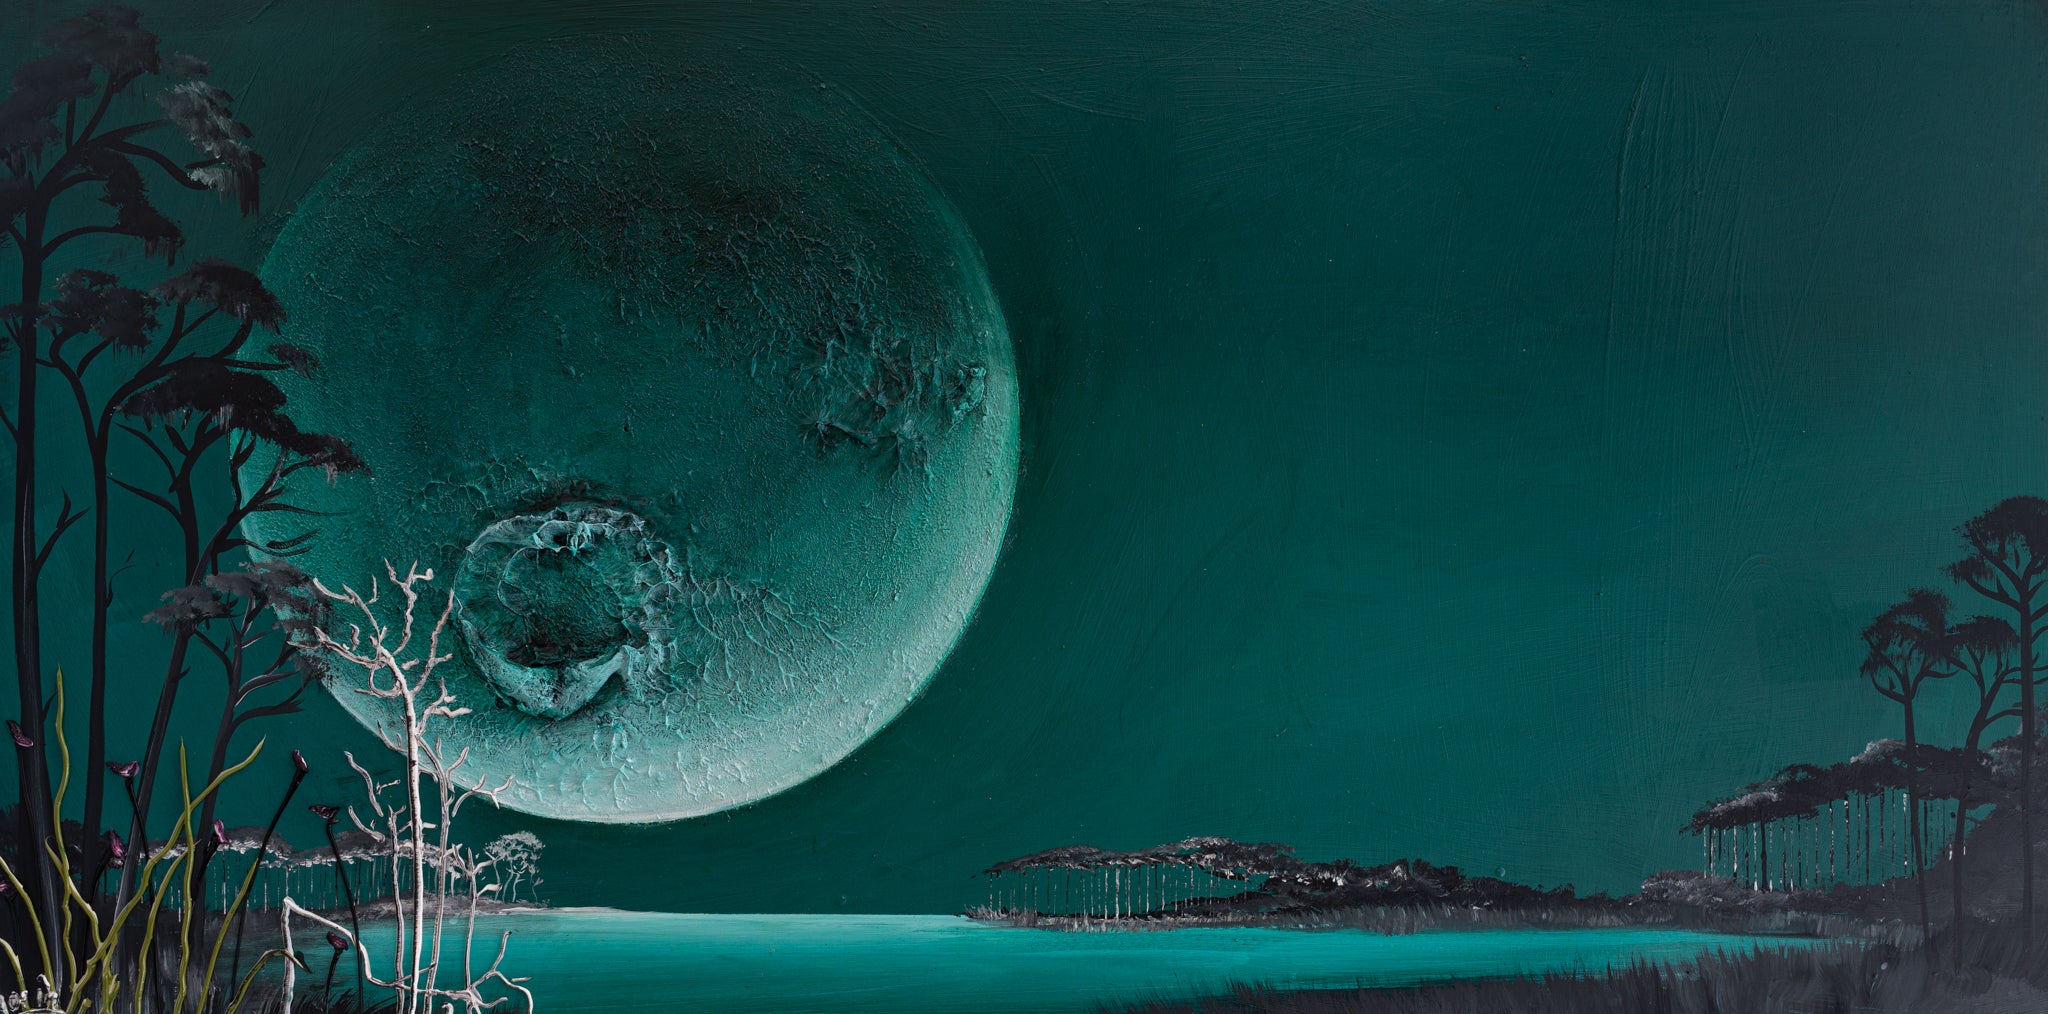 Moonscape, 48x24